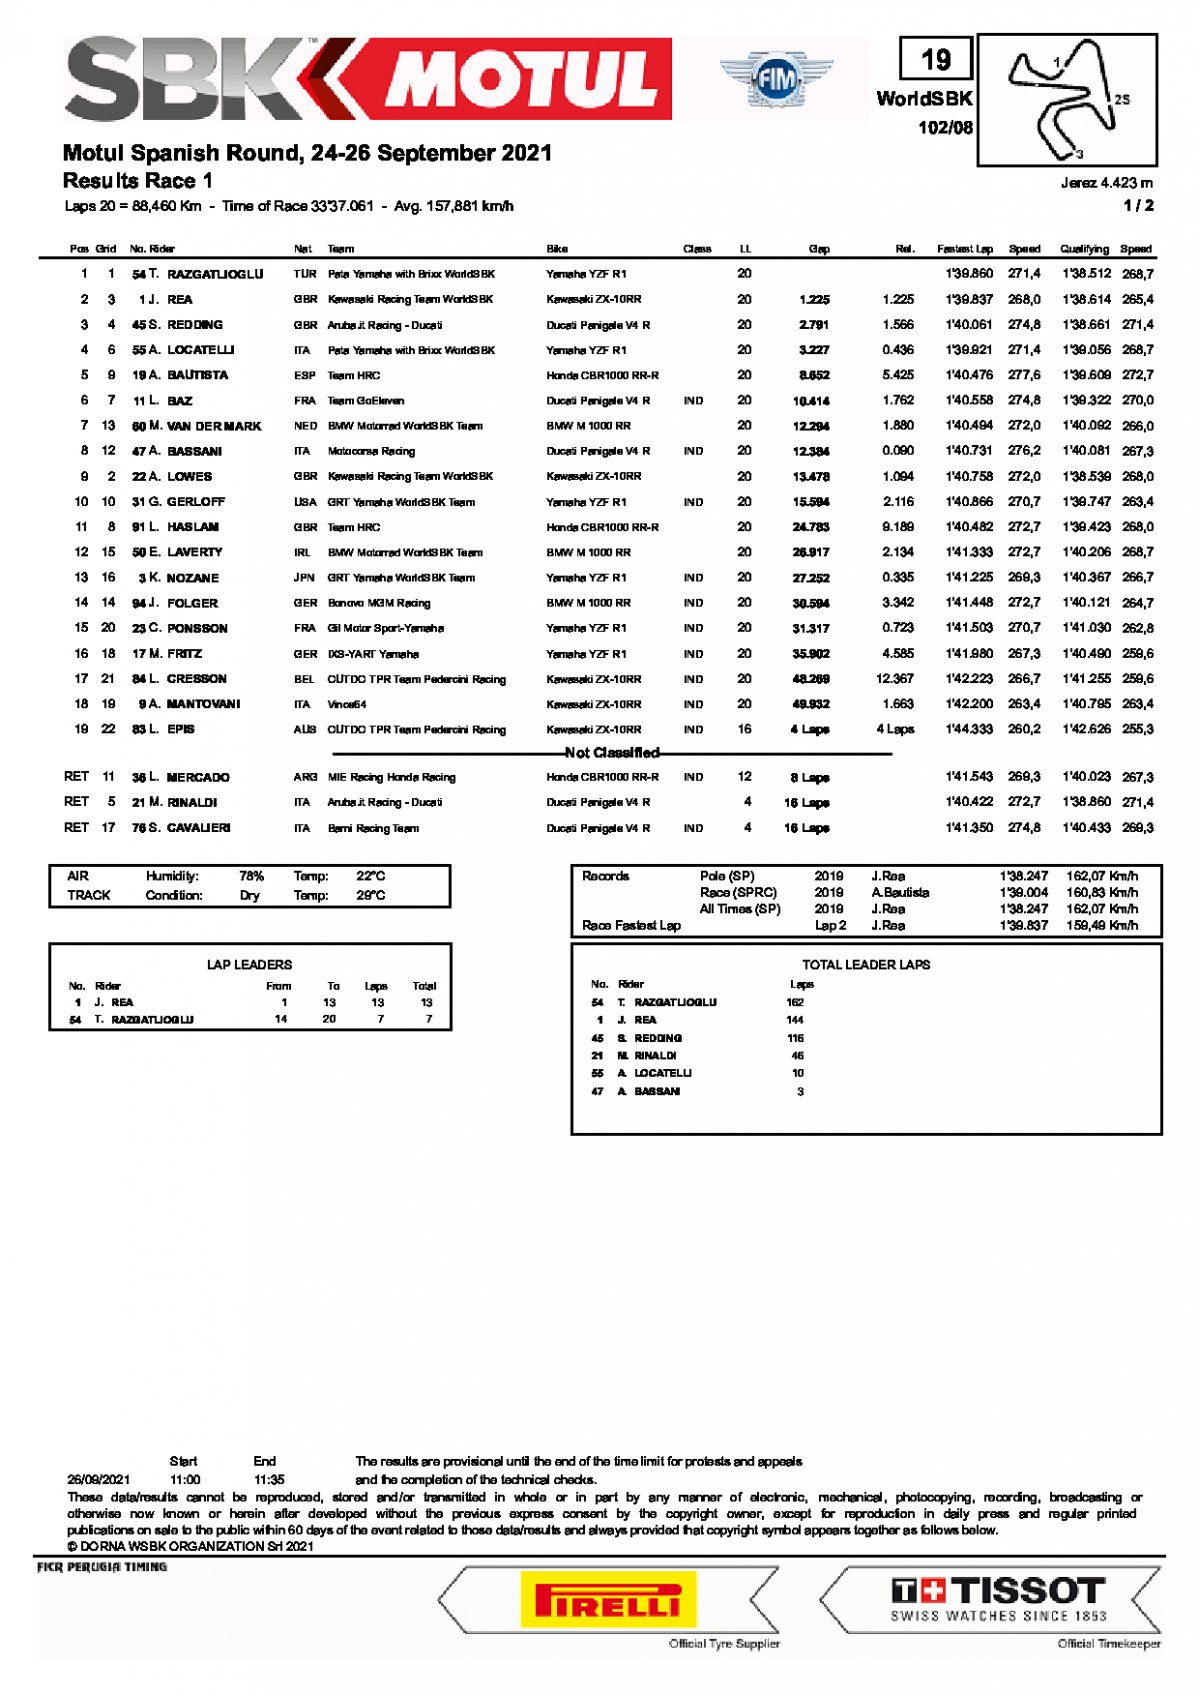 Результаты 1-й гонки WorldSBK, Circuito de Jerez (26/09/2021)